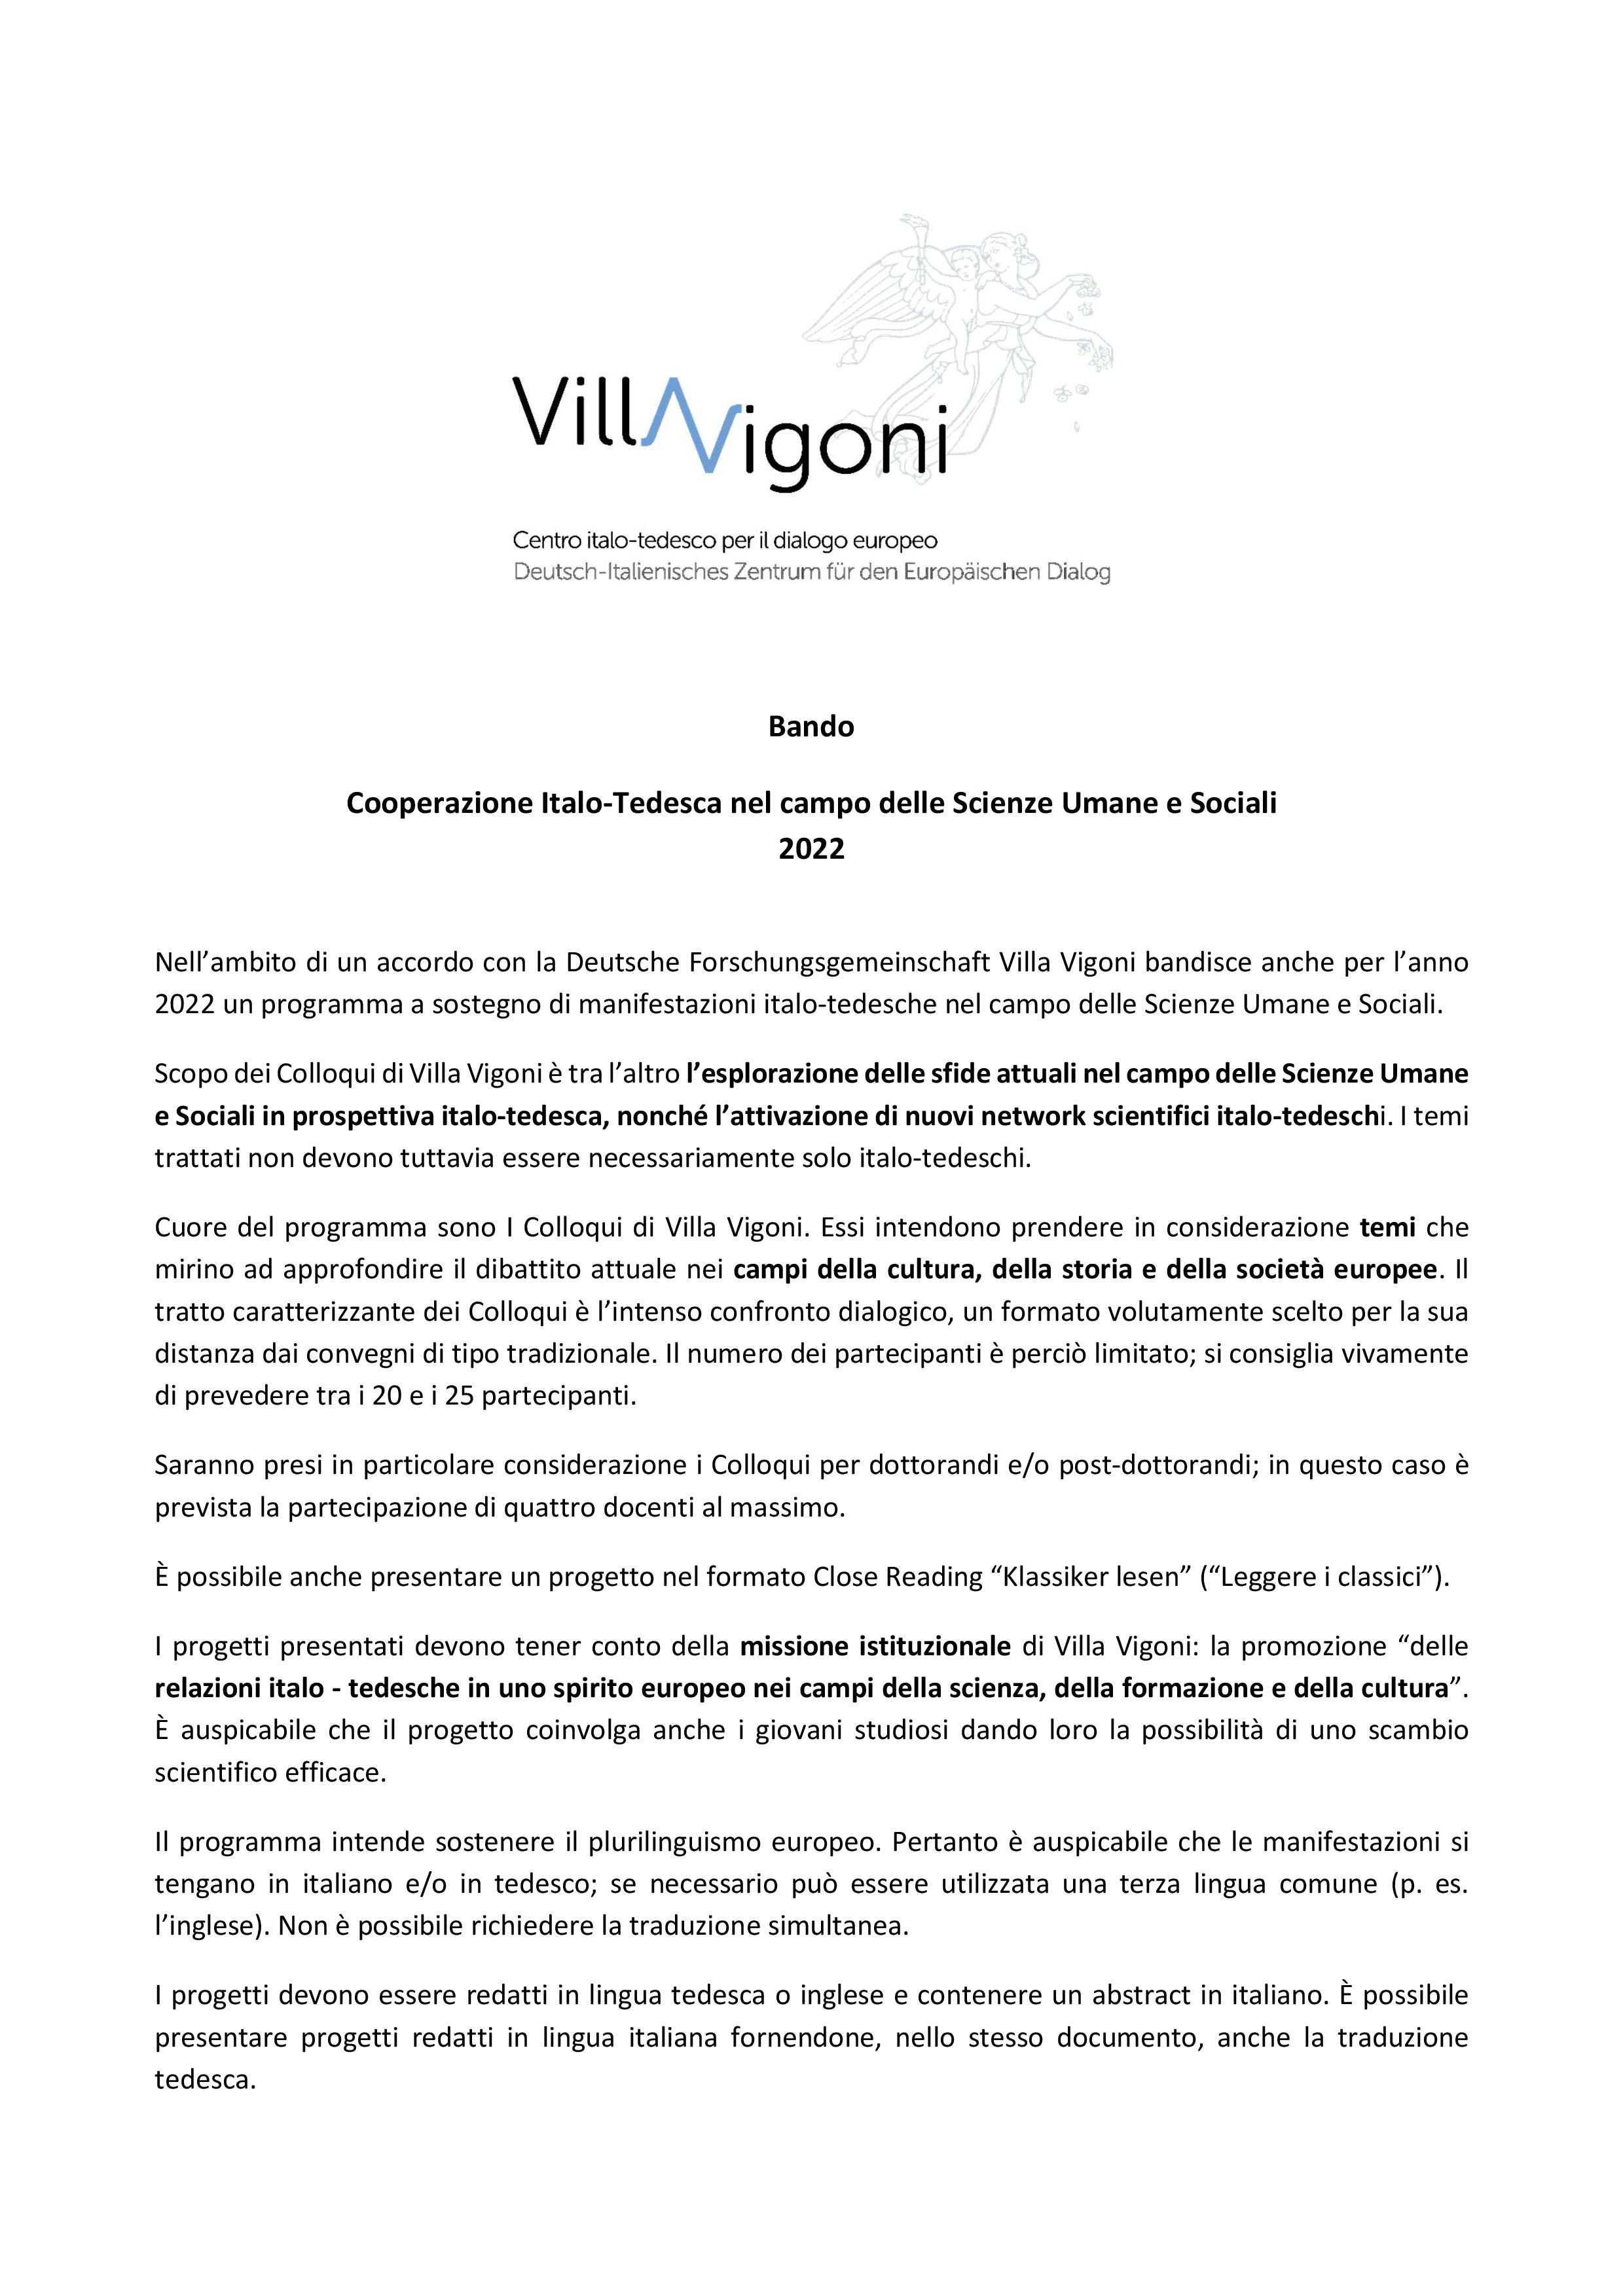 2022_Bando_Cooperazione Italo-Tedesca Scienze Umane e Sociali-page-001